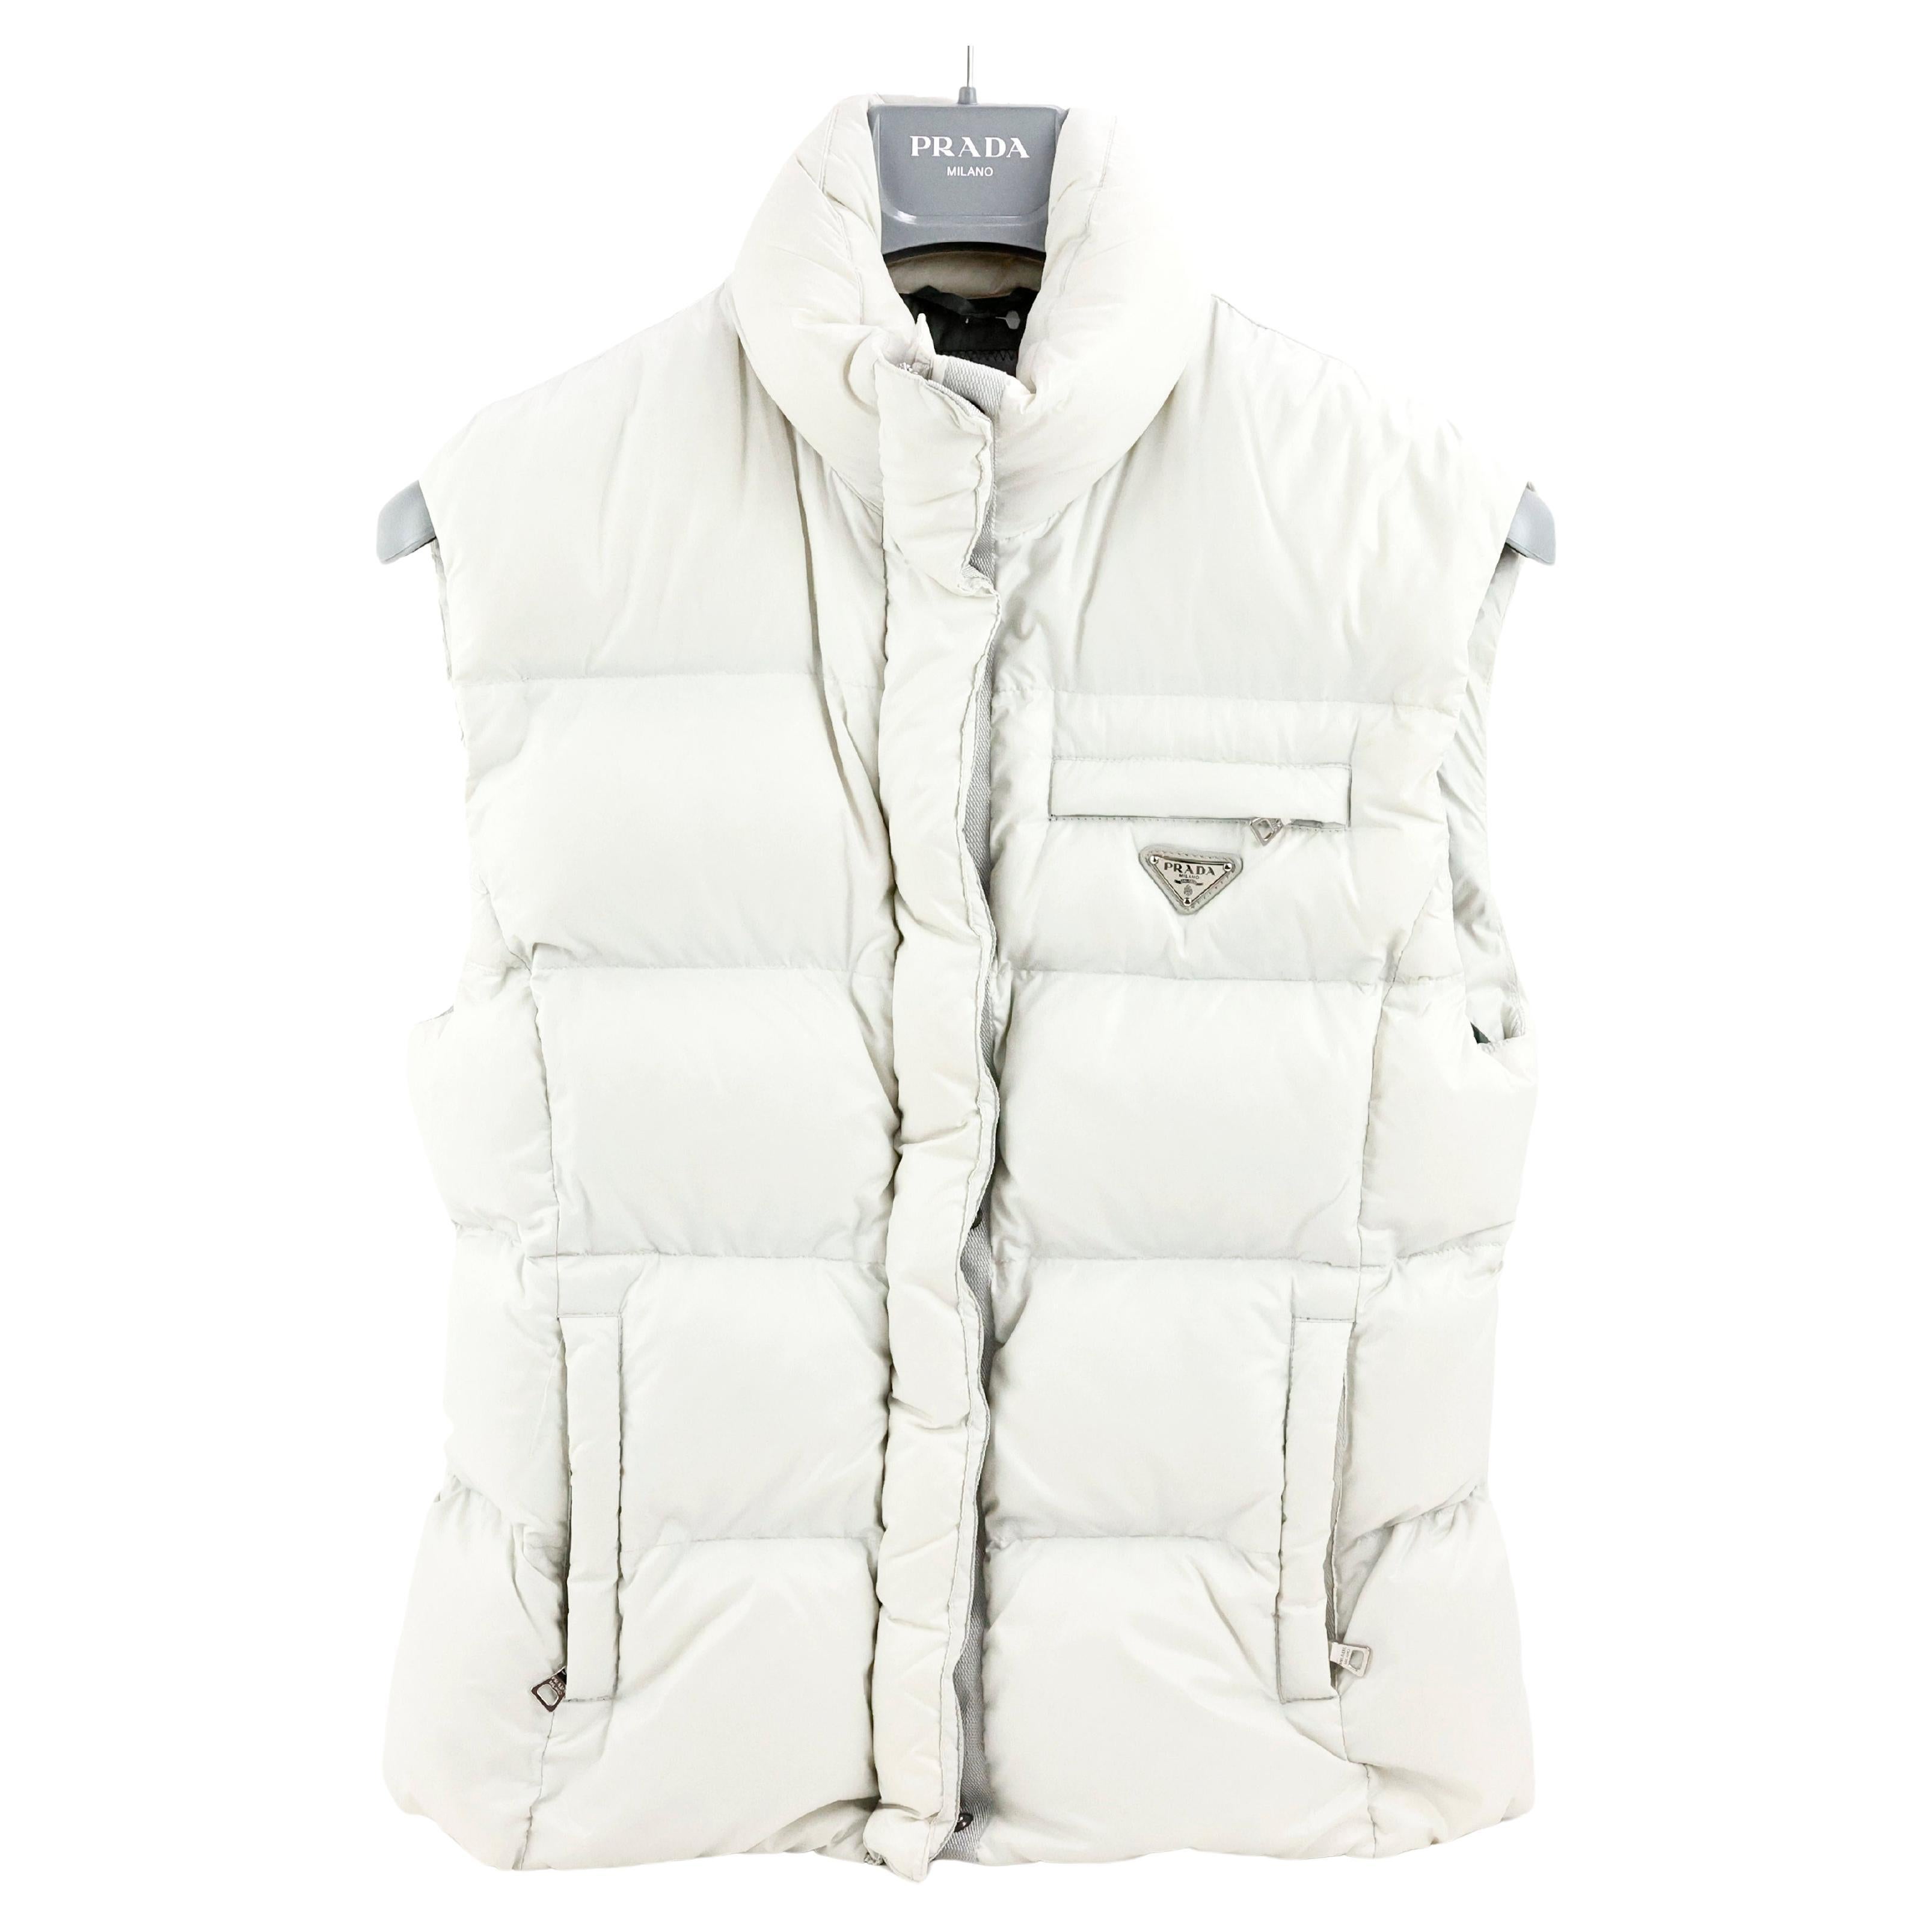 Prada Sleeveless Puffer Jacket in Nylon Color White For Sale